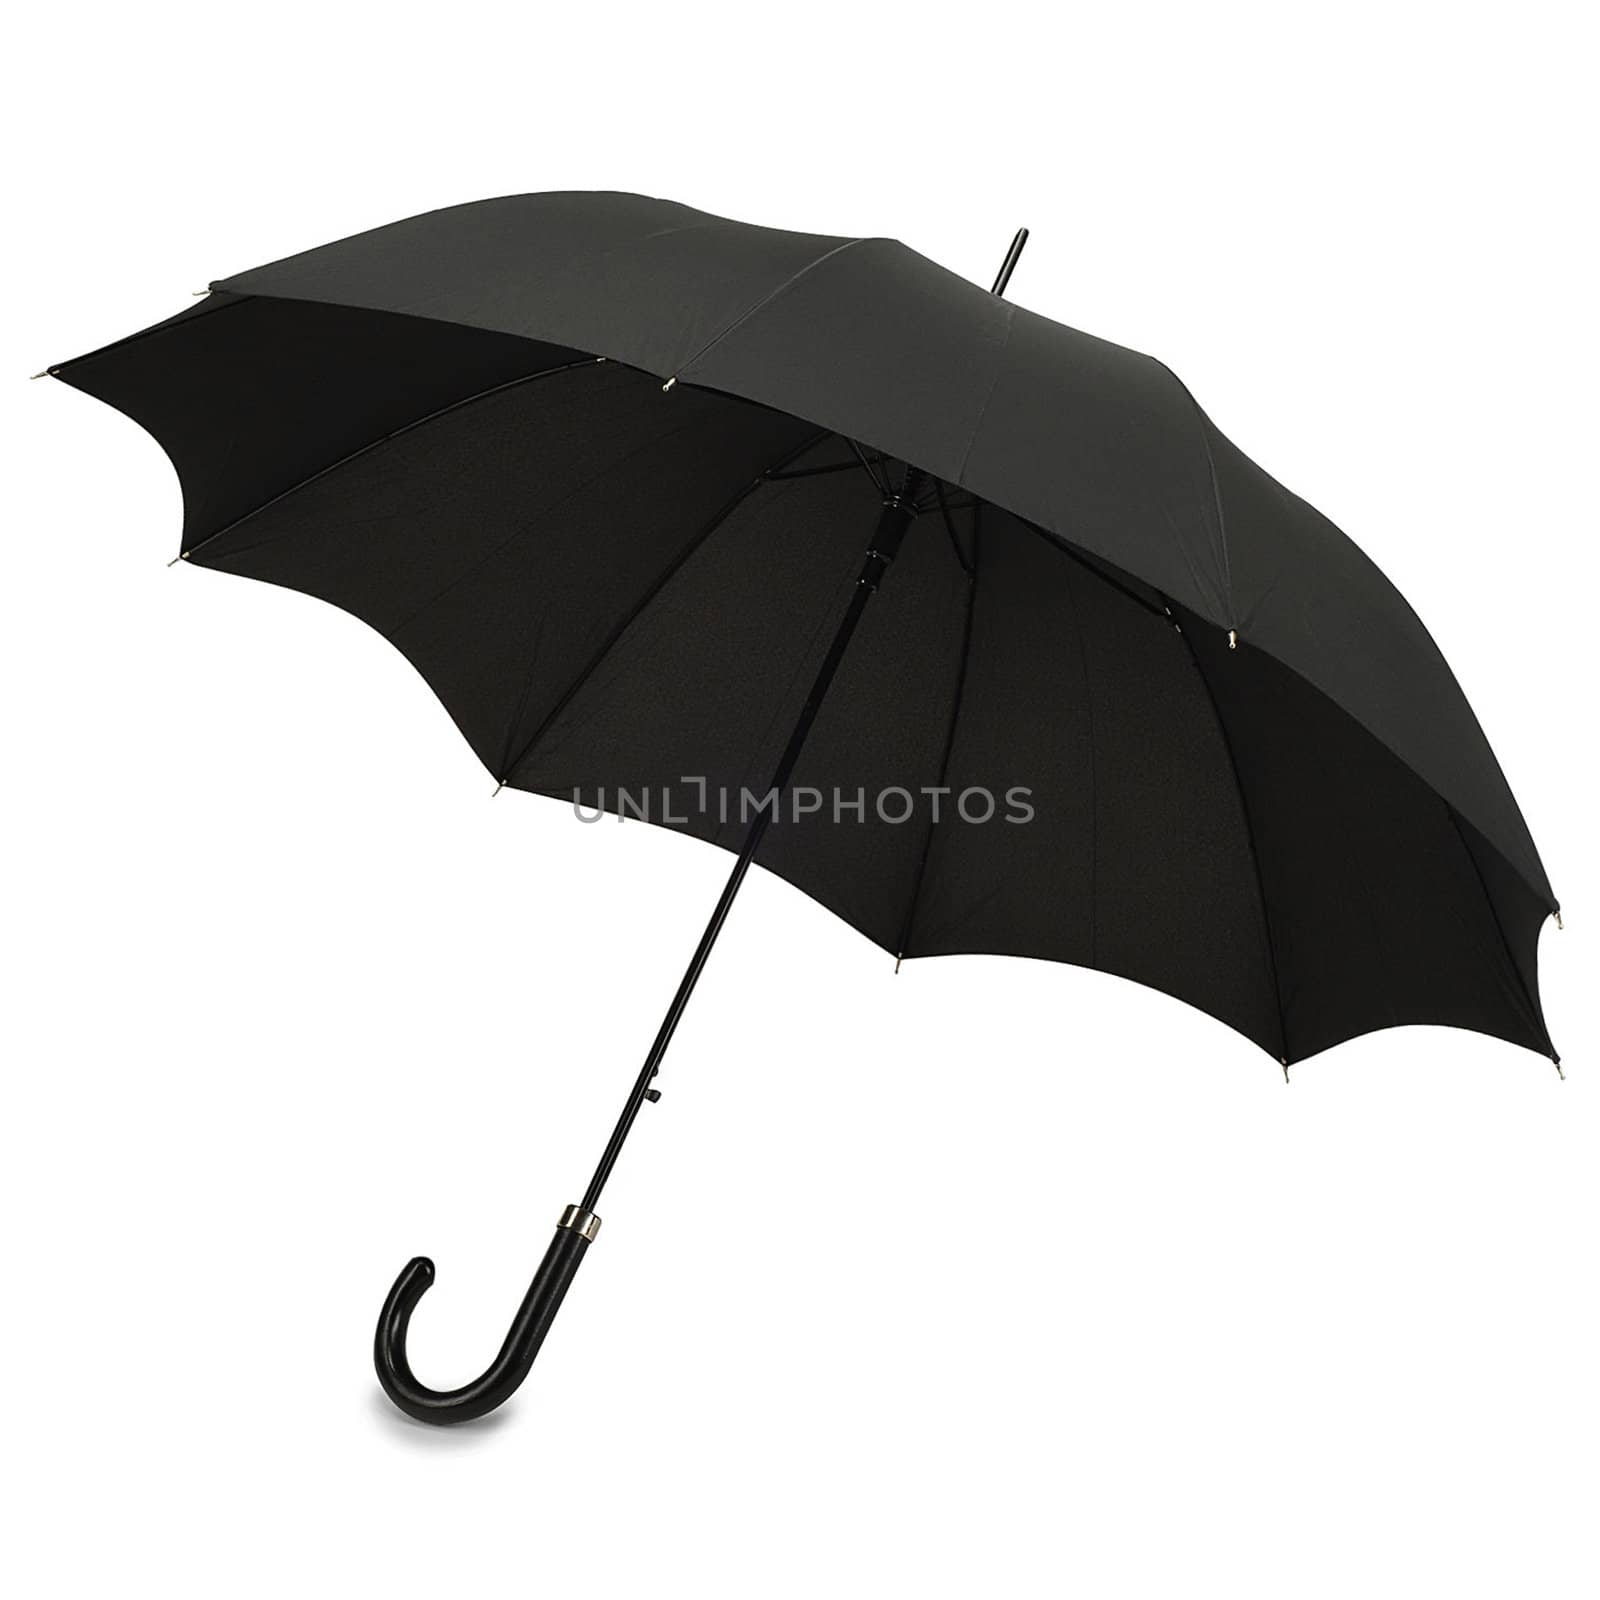 Black umbrella on white background by ozaiachin